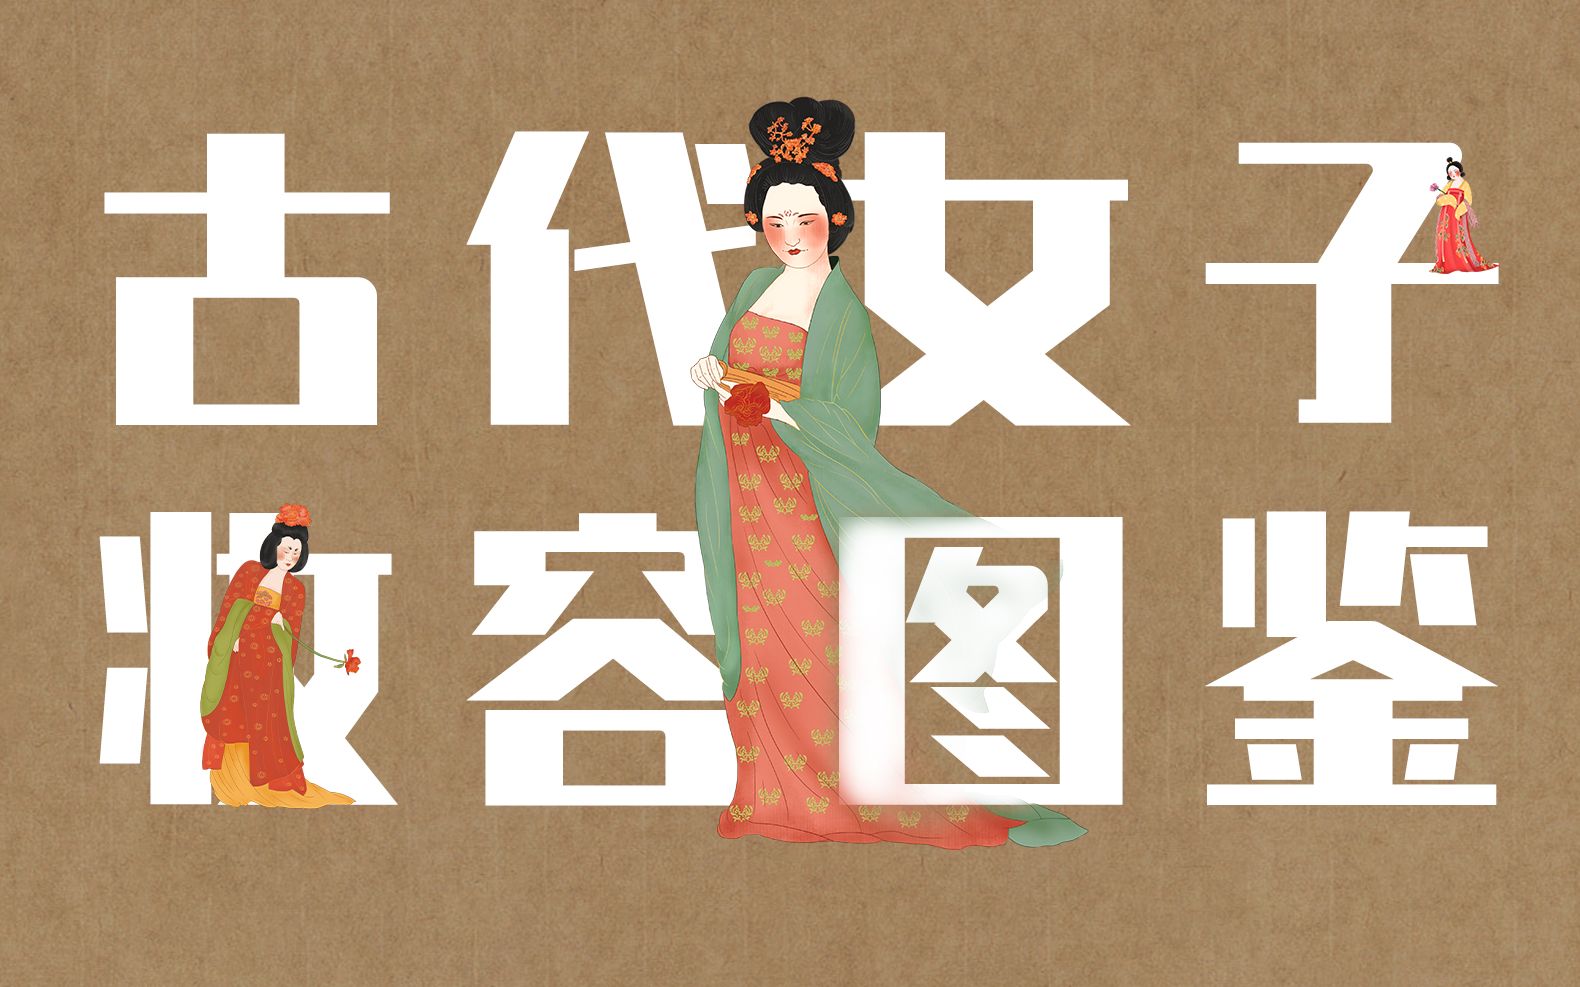 【中国传统文化之美】古代女子妆容图鉴 | 文学素材积累